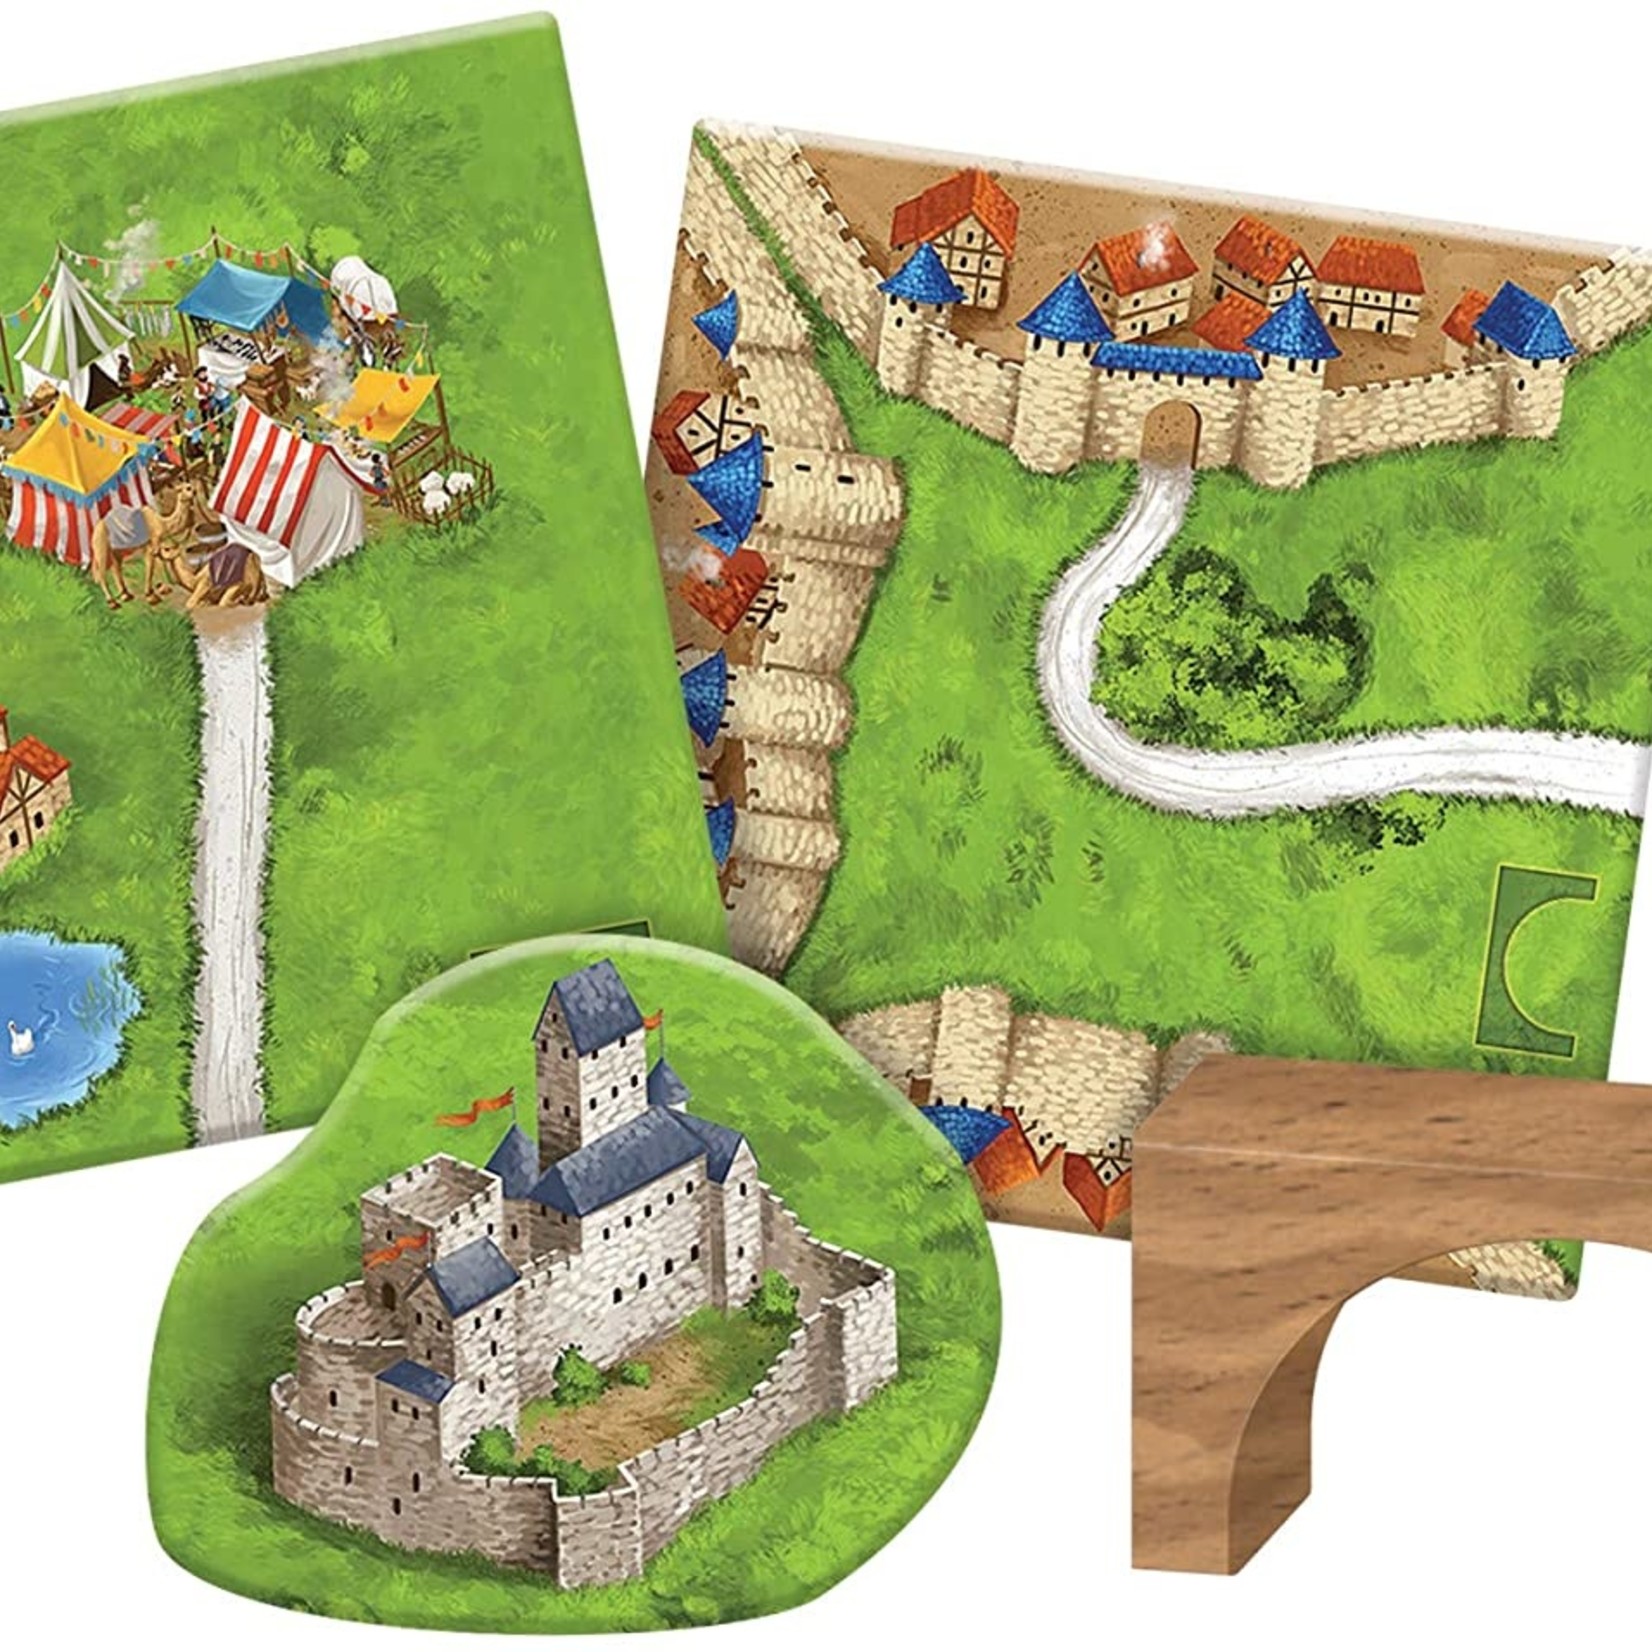 Z-Man Games Carcassonne Expansion 8 Bridges, Castles and Bazaars Expansion